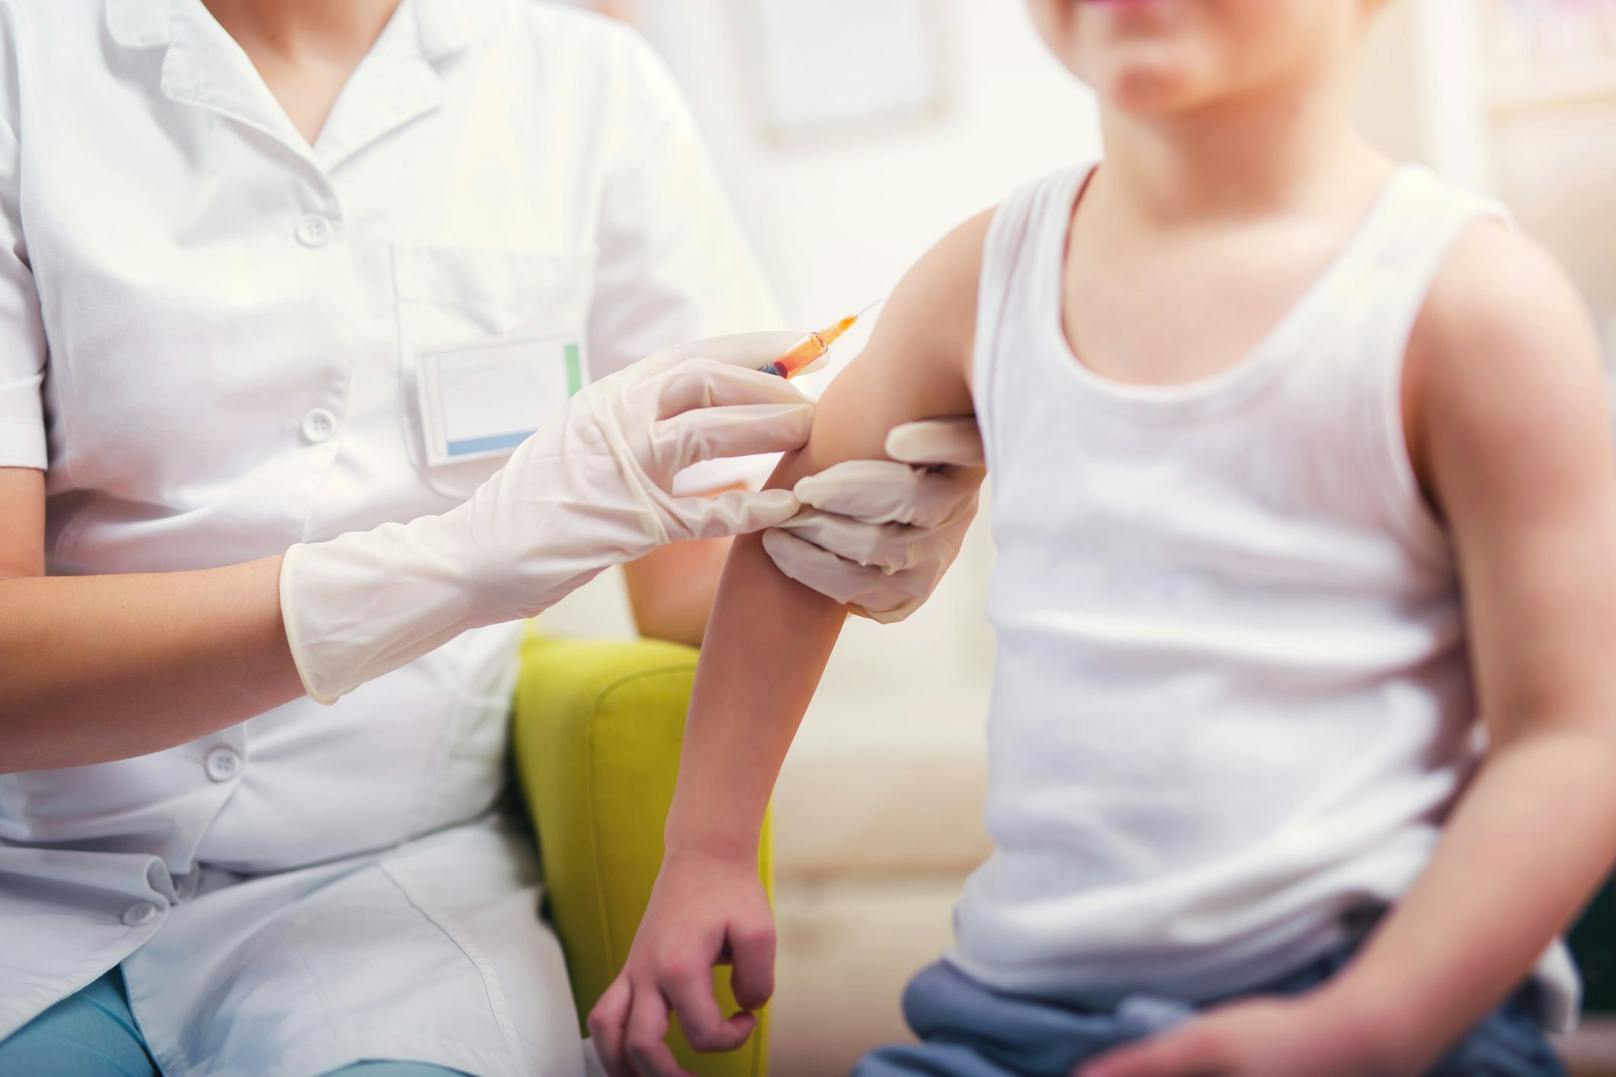 Kinder falsch geimpft – jetzt drohen rechtliche Folgen